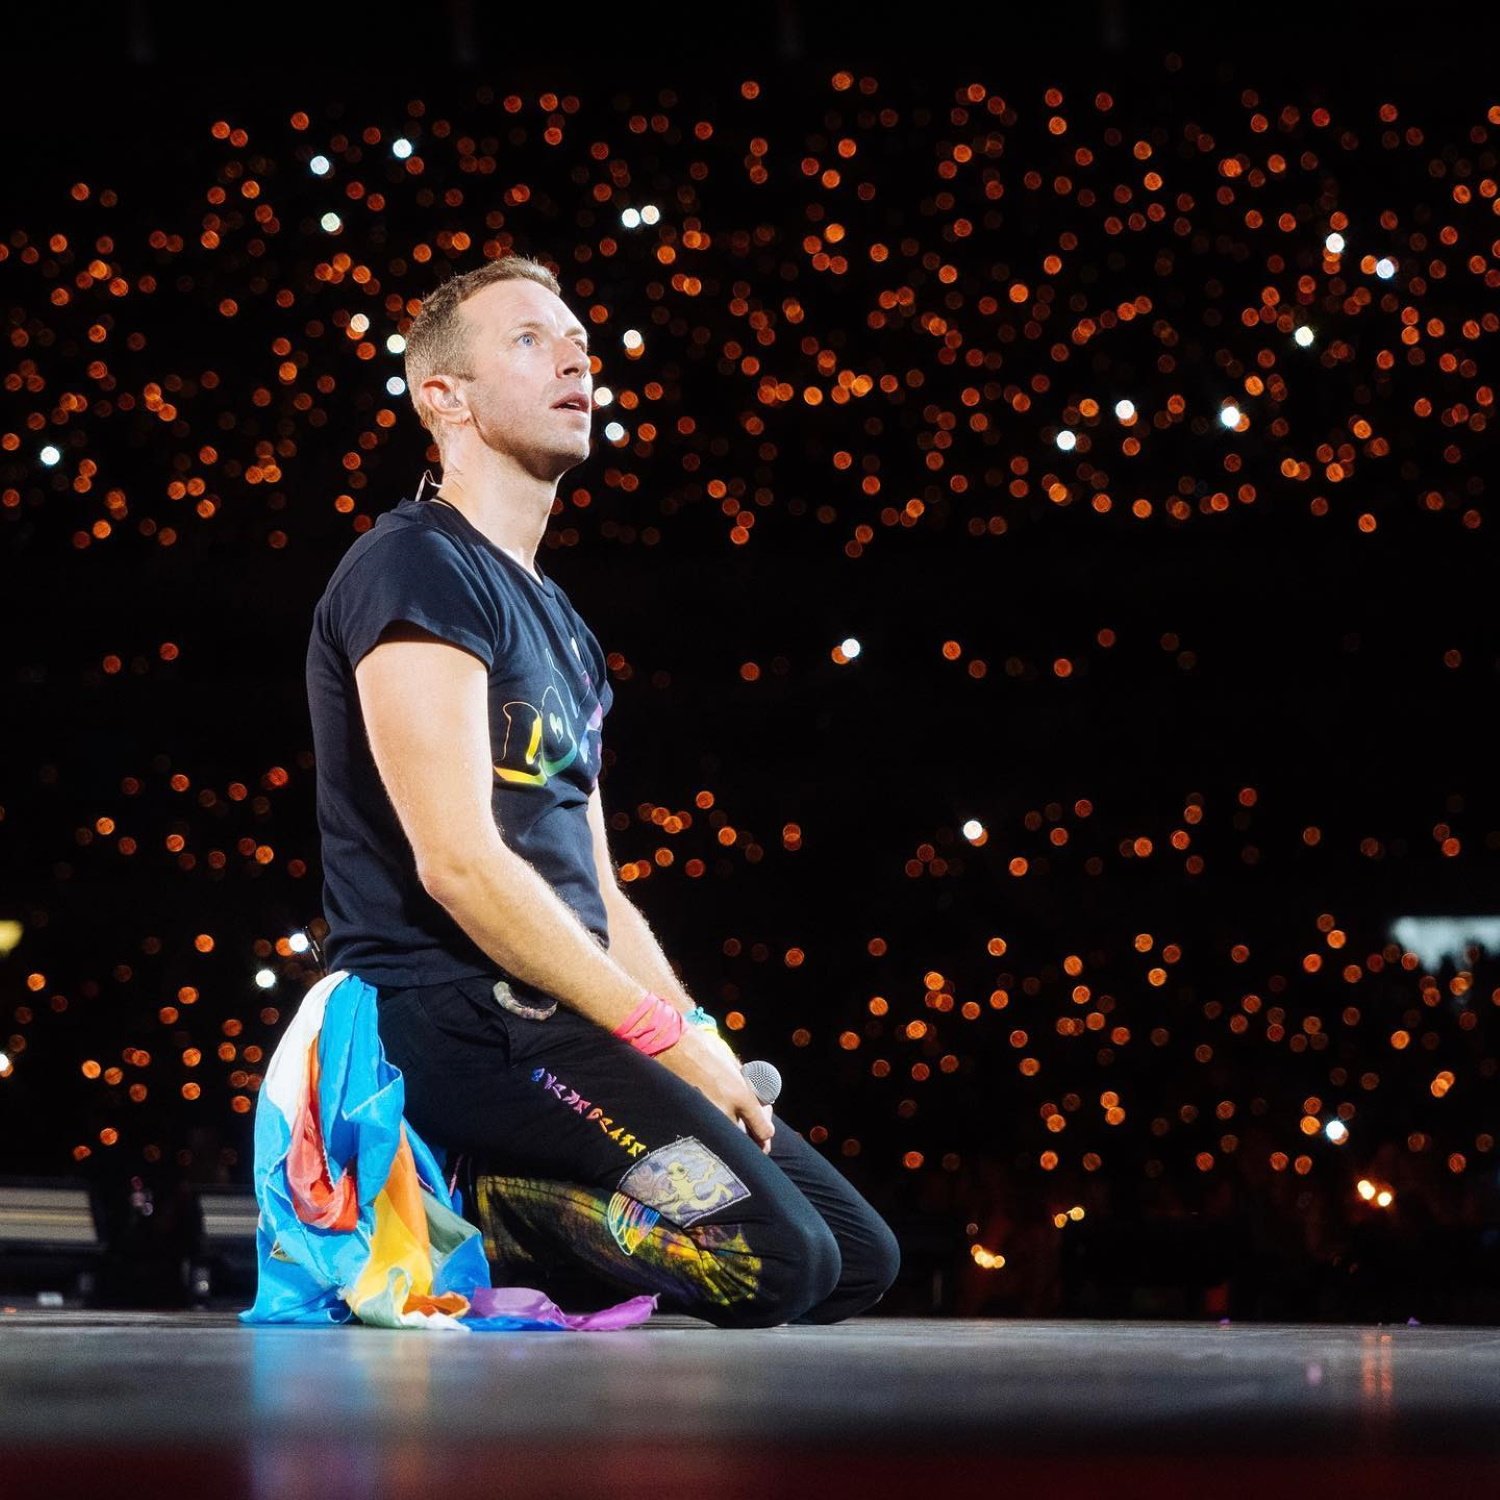 El gesto de Coldplay con el catalán que emociona a los fans antes de tocar en Barcelona